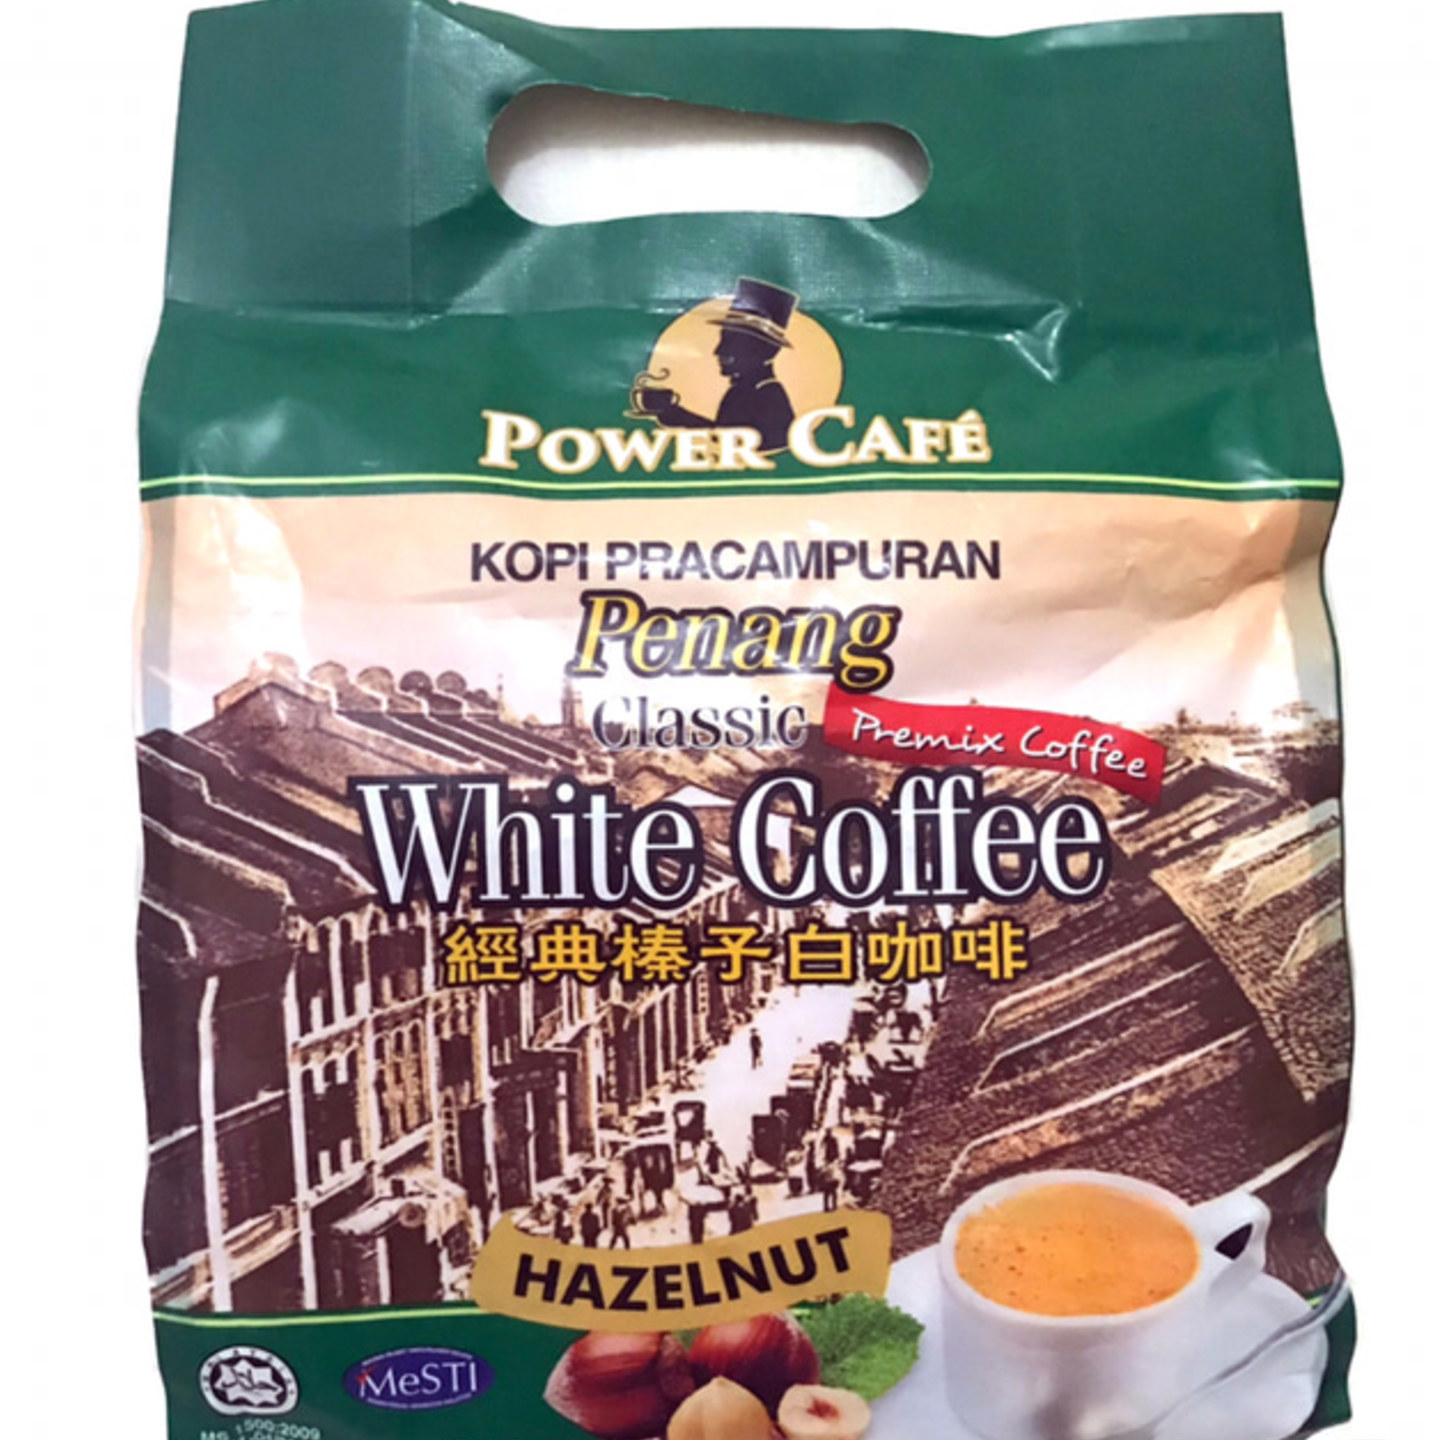 Power Cafe White Coffee Hazelnut Flavour